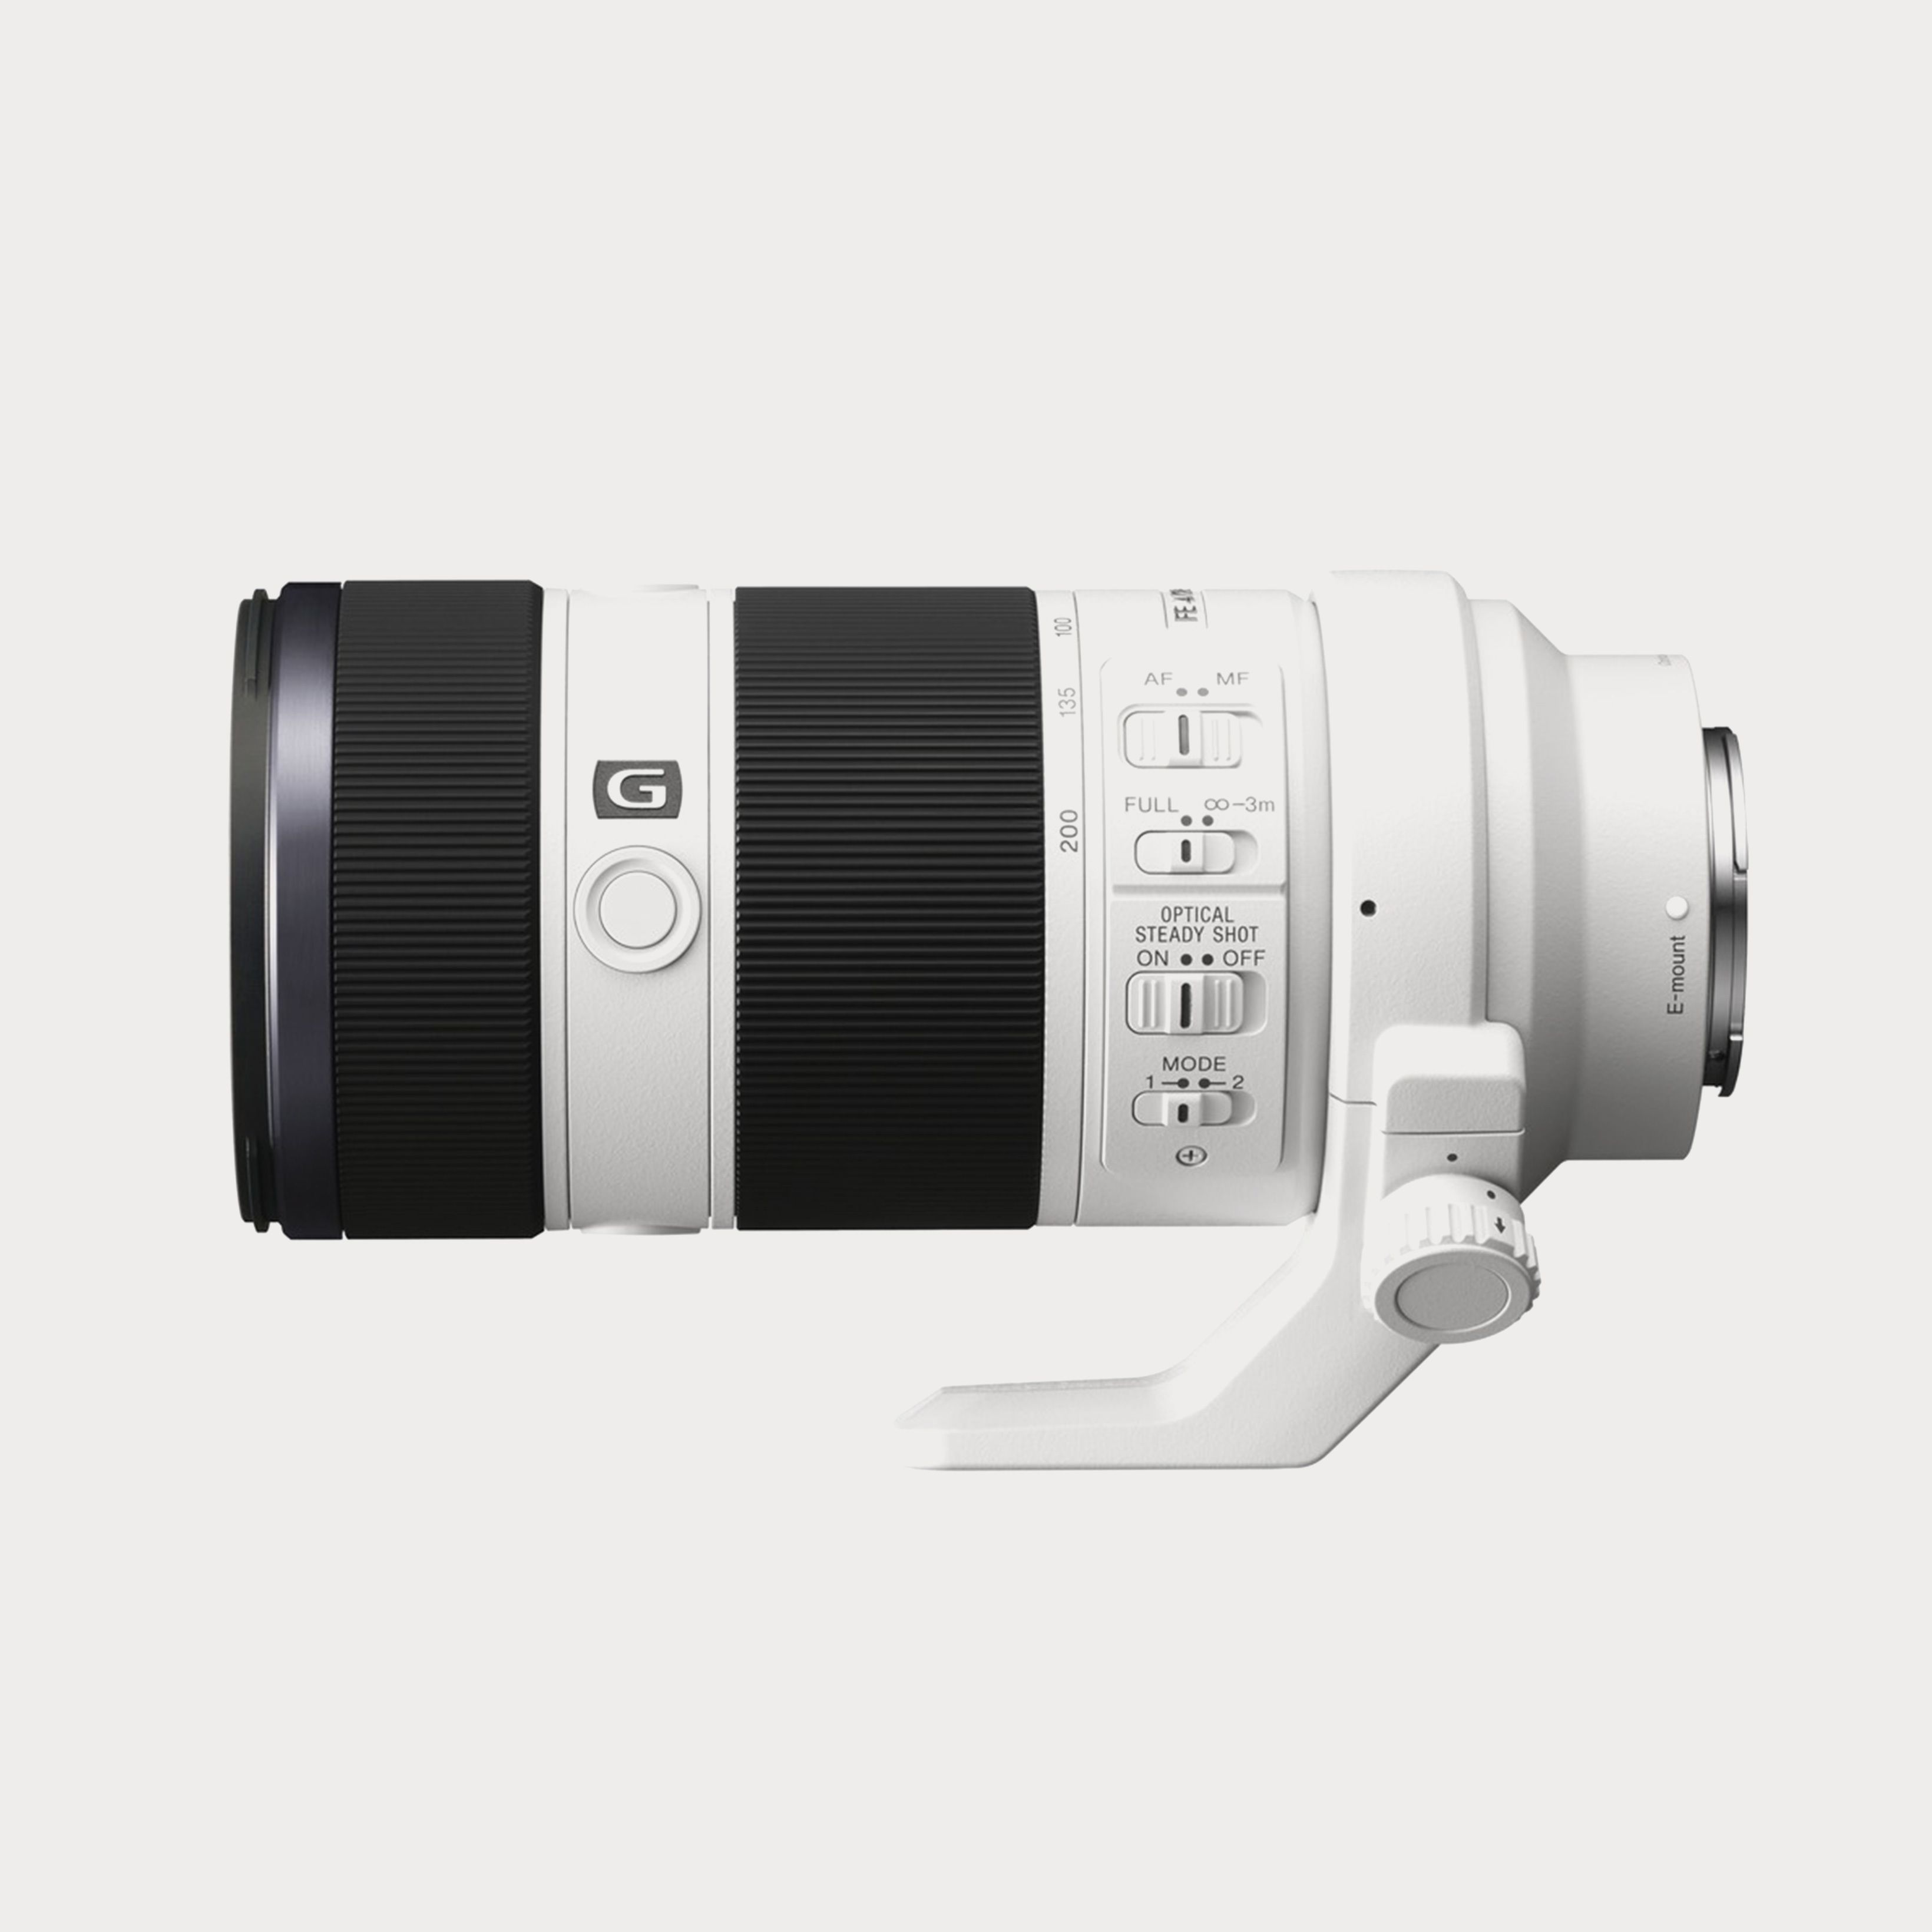 Sony FE 70-200mm f/4 G OSS Lens | Moment